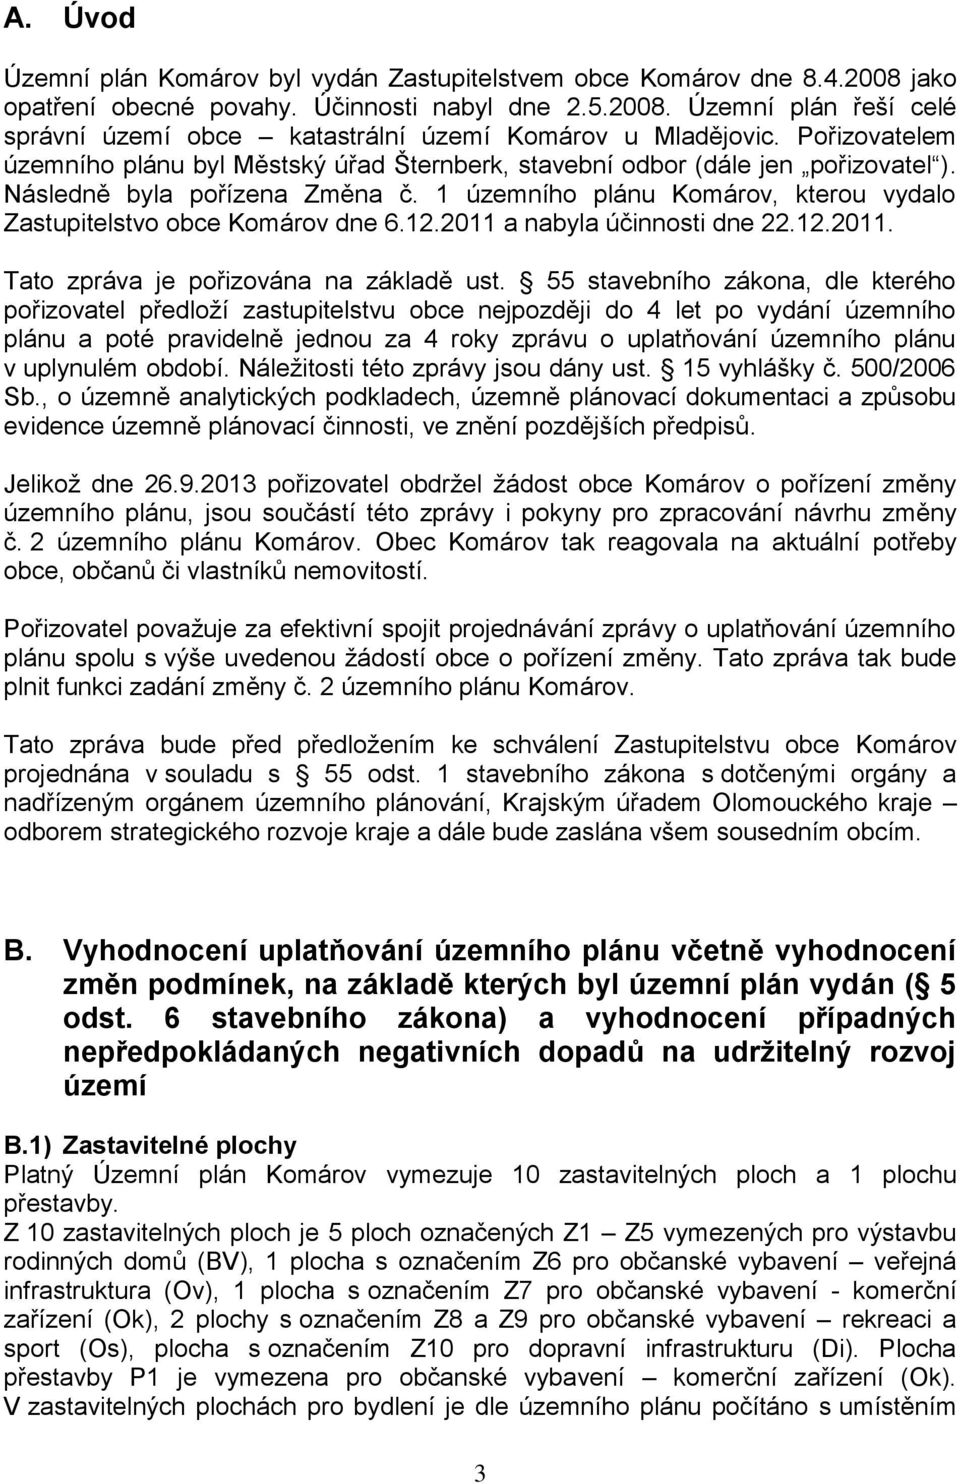 1 územního plánu Komárov, kterou vydalo Zastupitelstvo obce Komárov dne 6.12.2011 a nabyla účinnosti dne 22.12.2011. Tato zpráva je pořizována na základě ust.